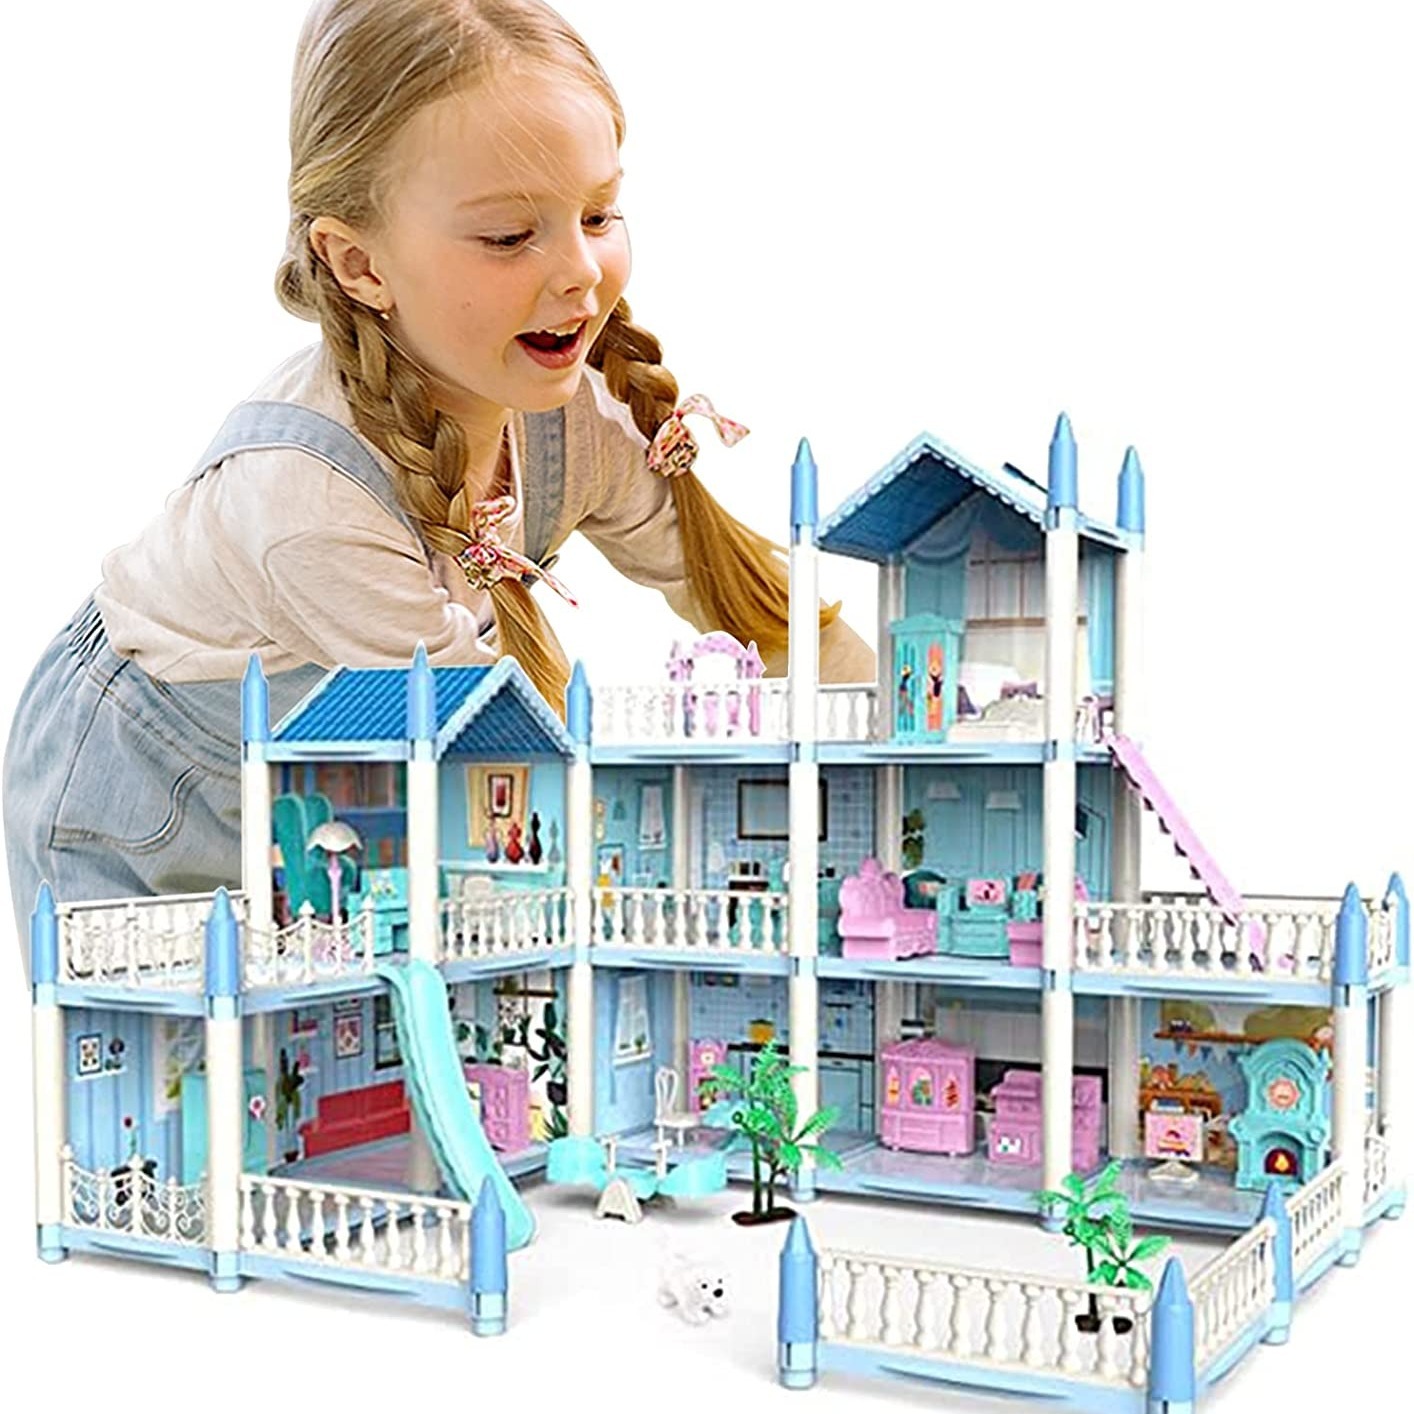 Doll house 3 floors